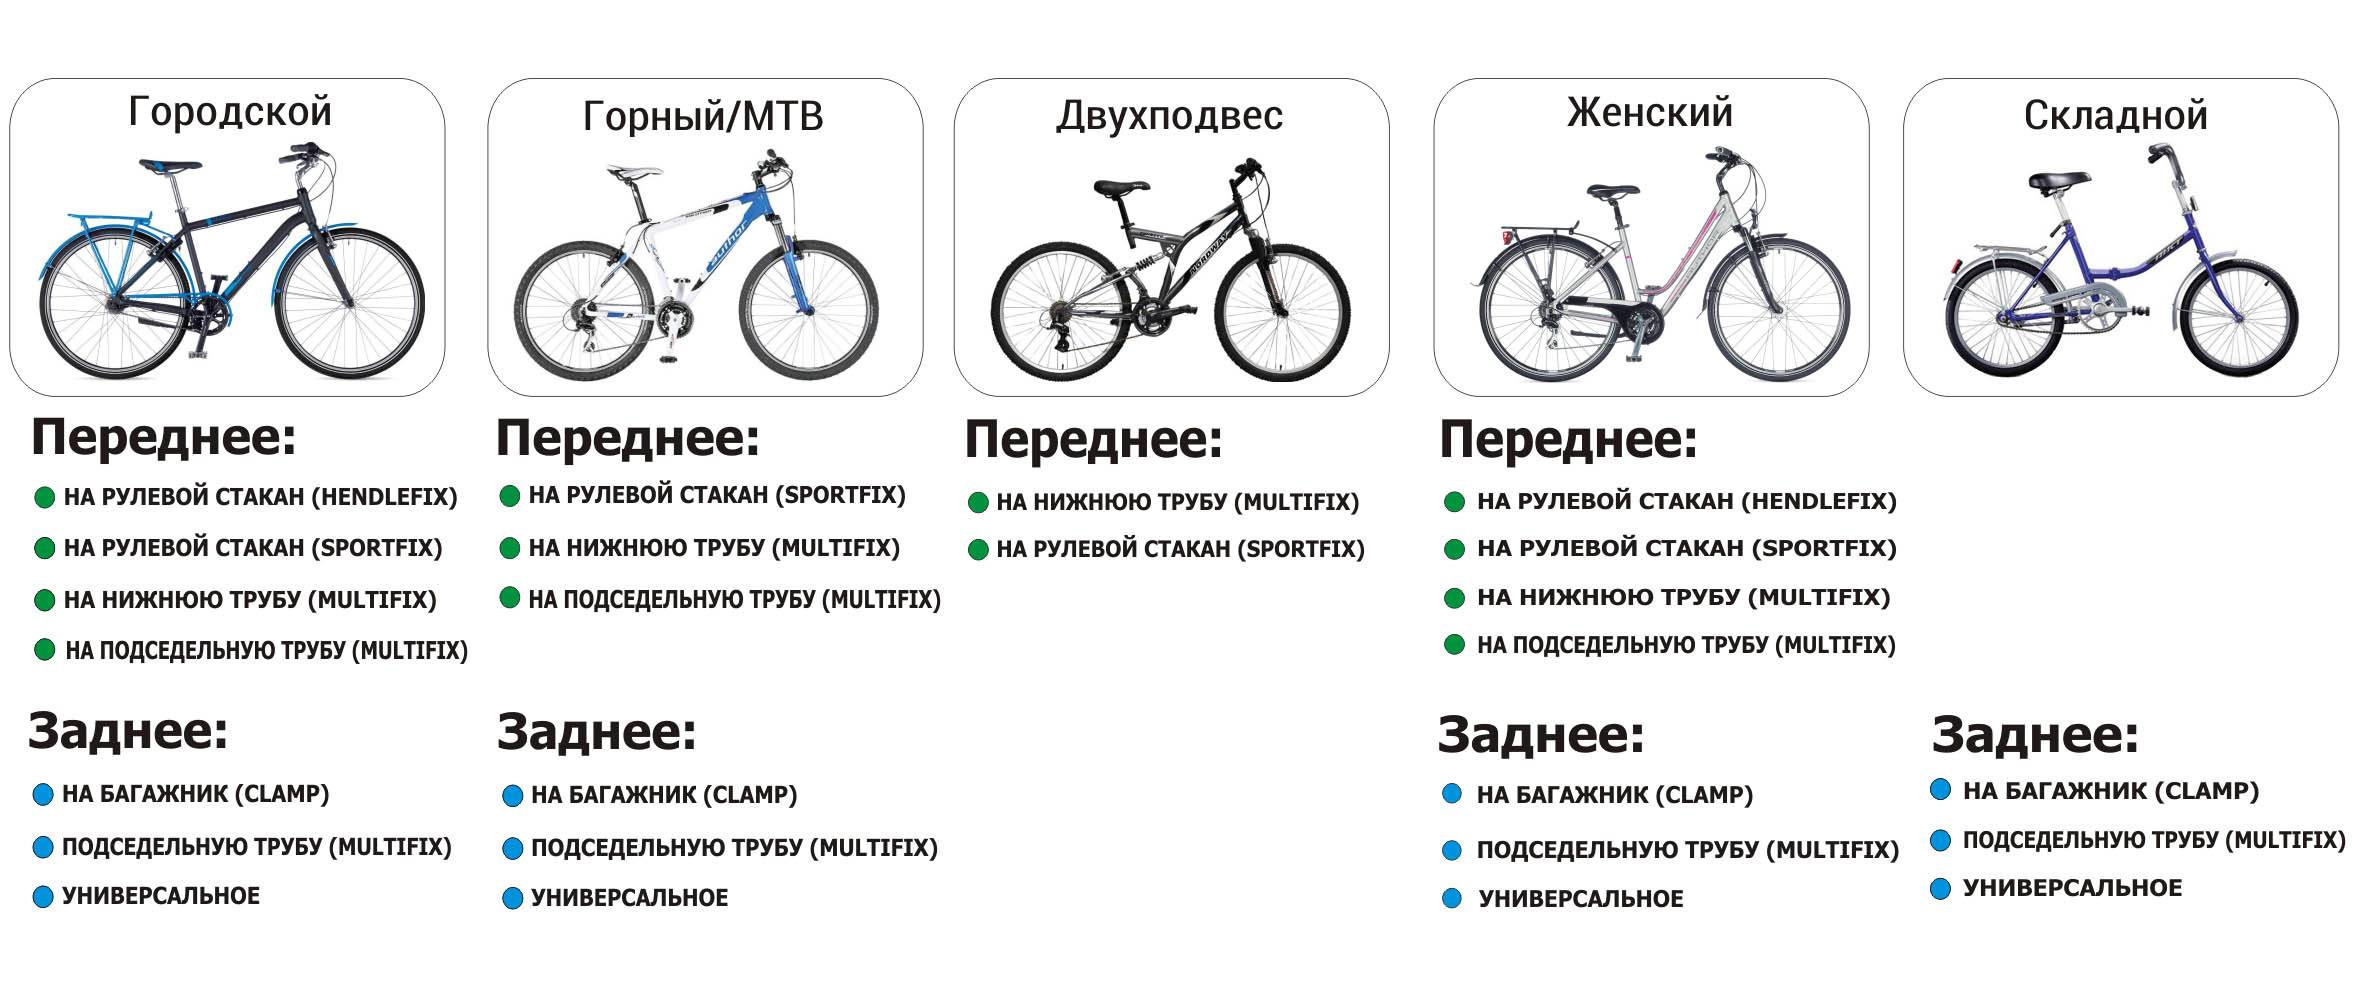 Чем отличается горный велосипед от шоссейного?